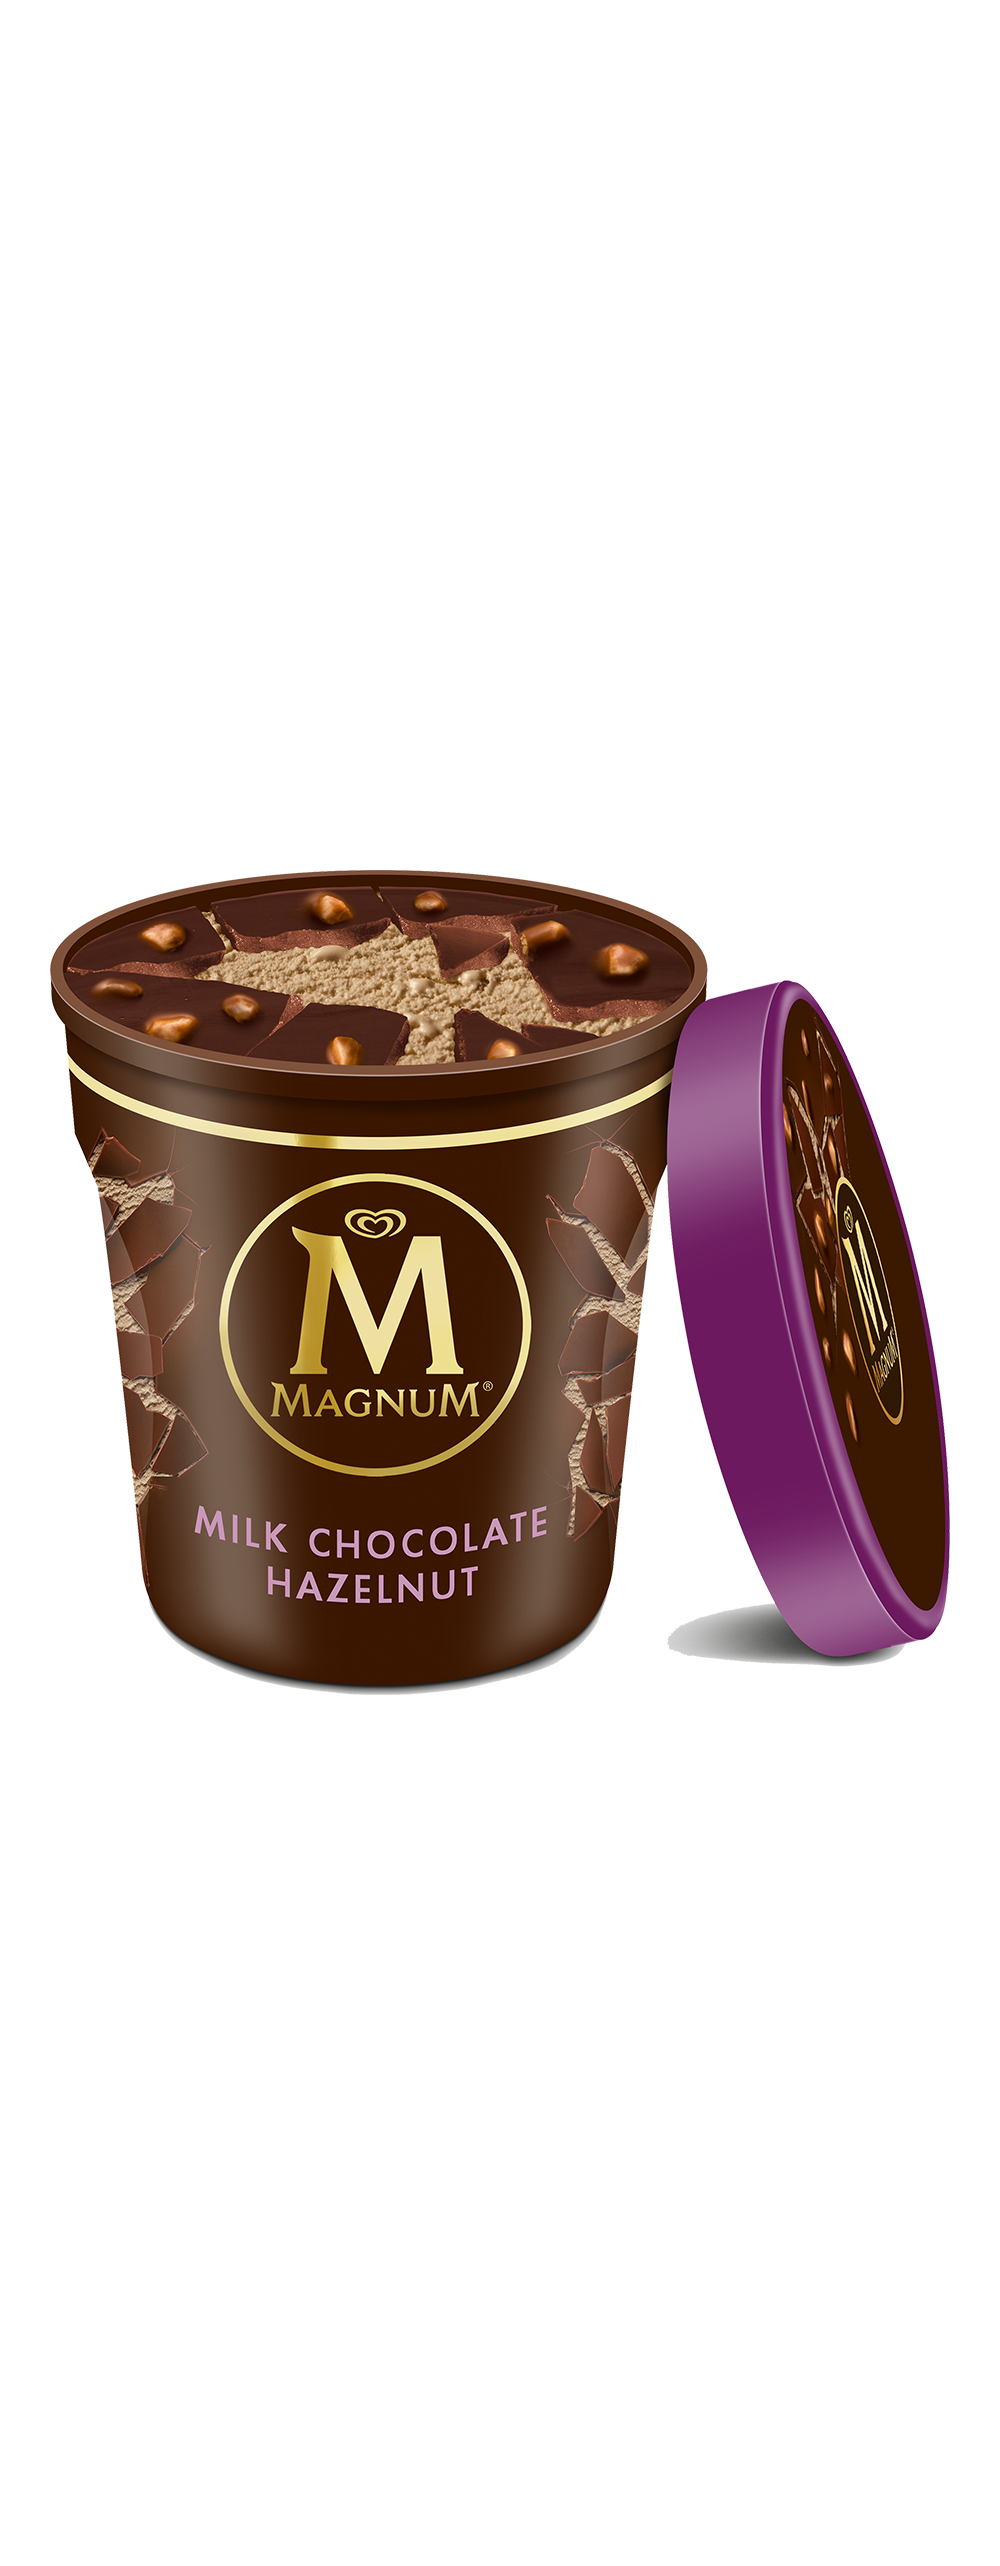 Magnum Chocolate Ice Cream Transparent Background